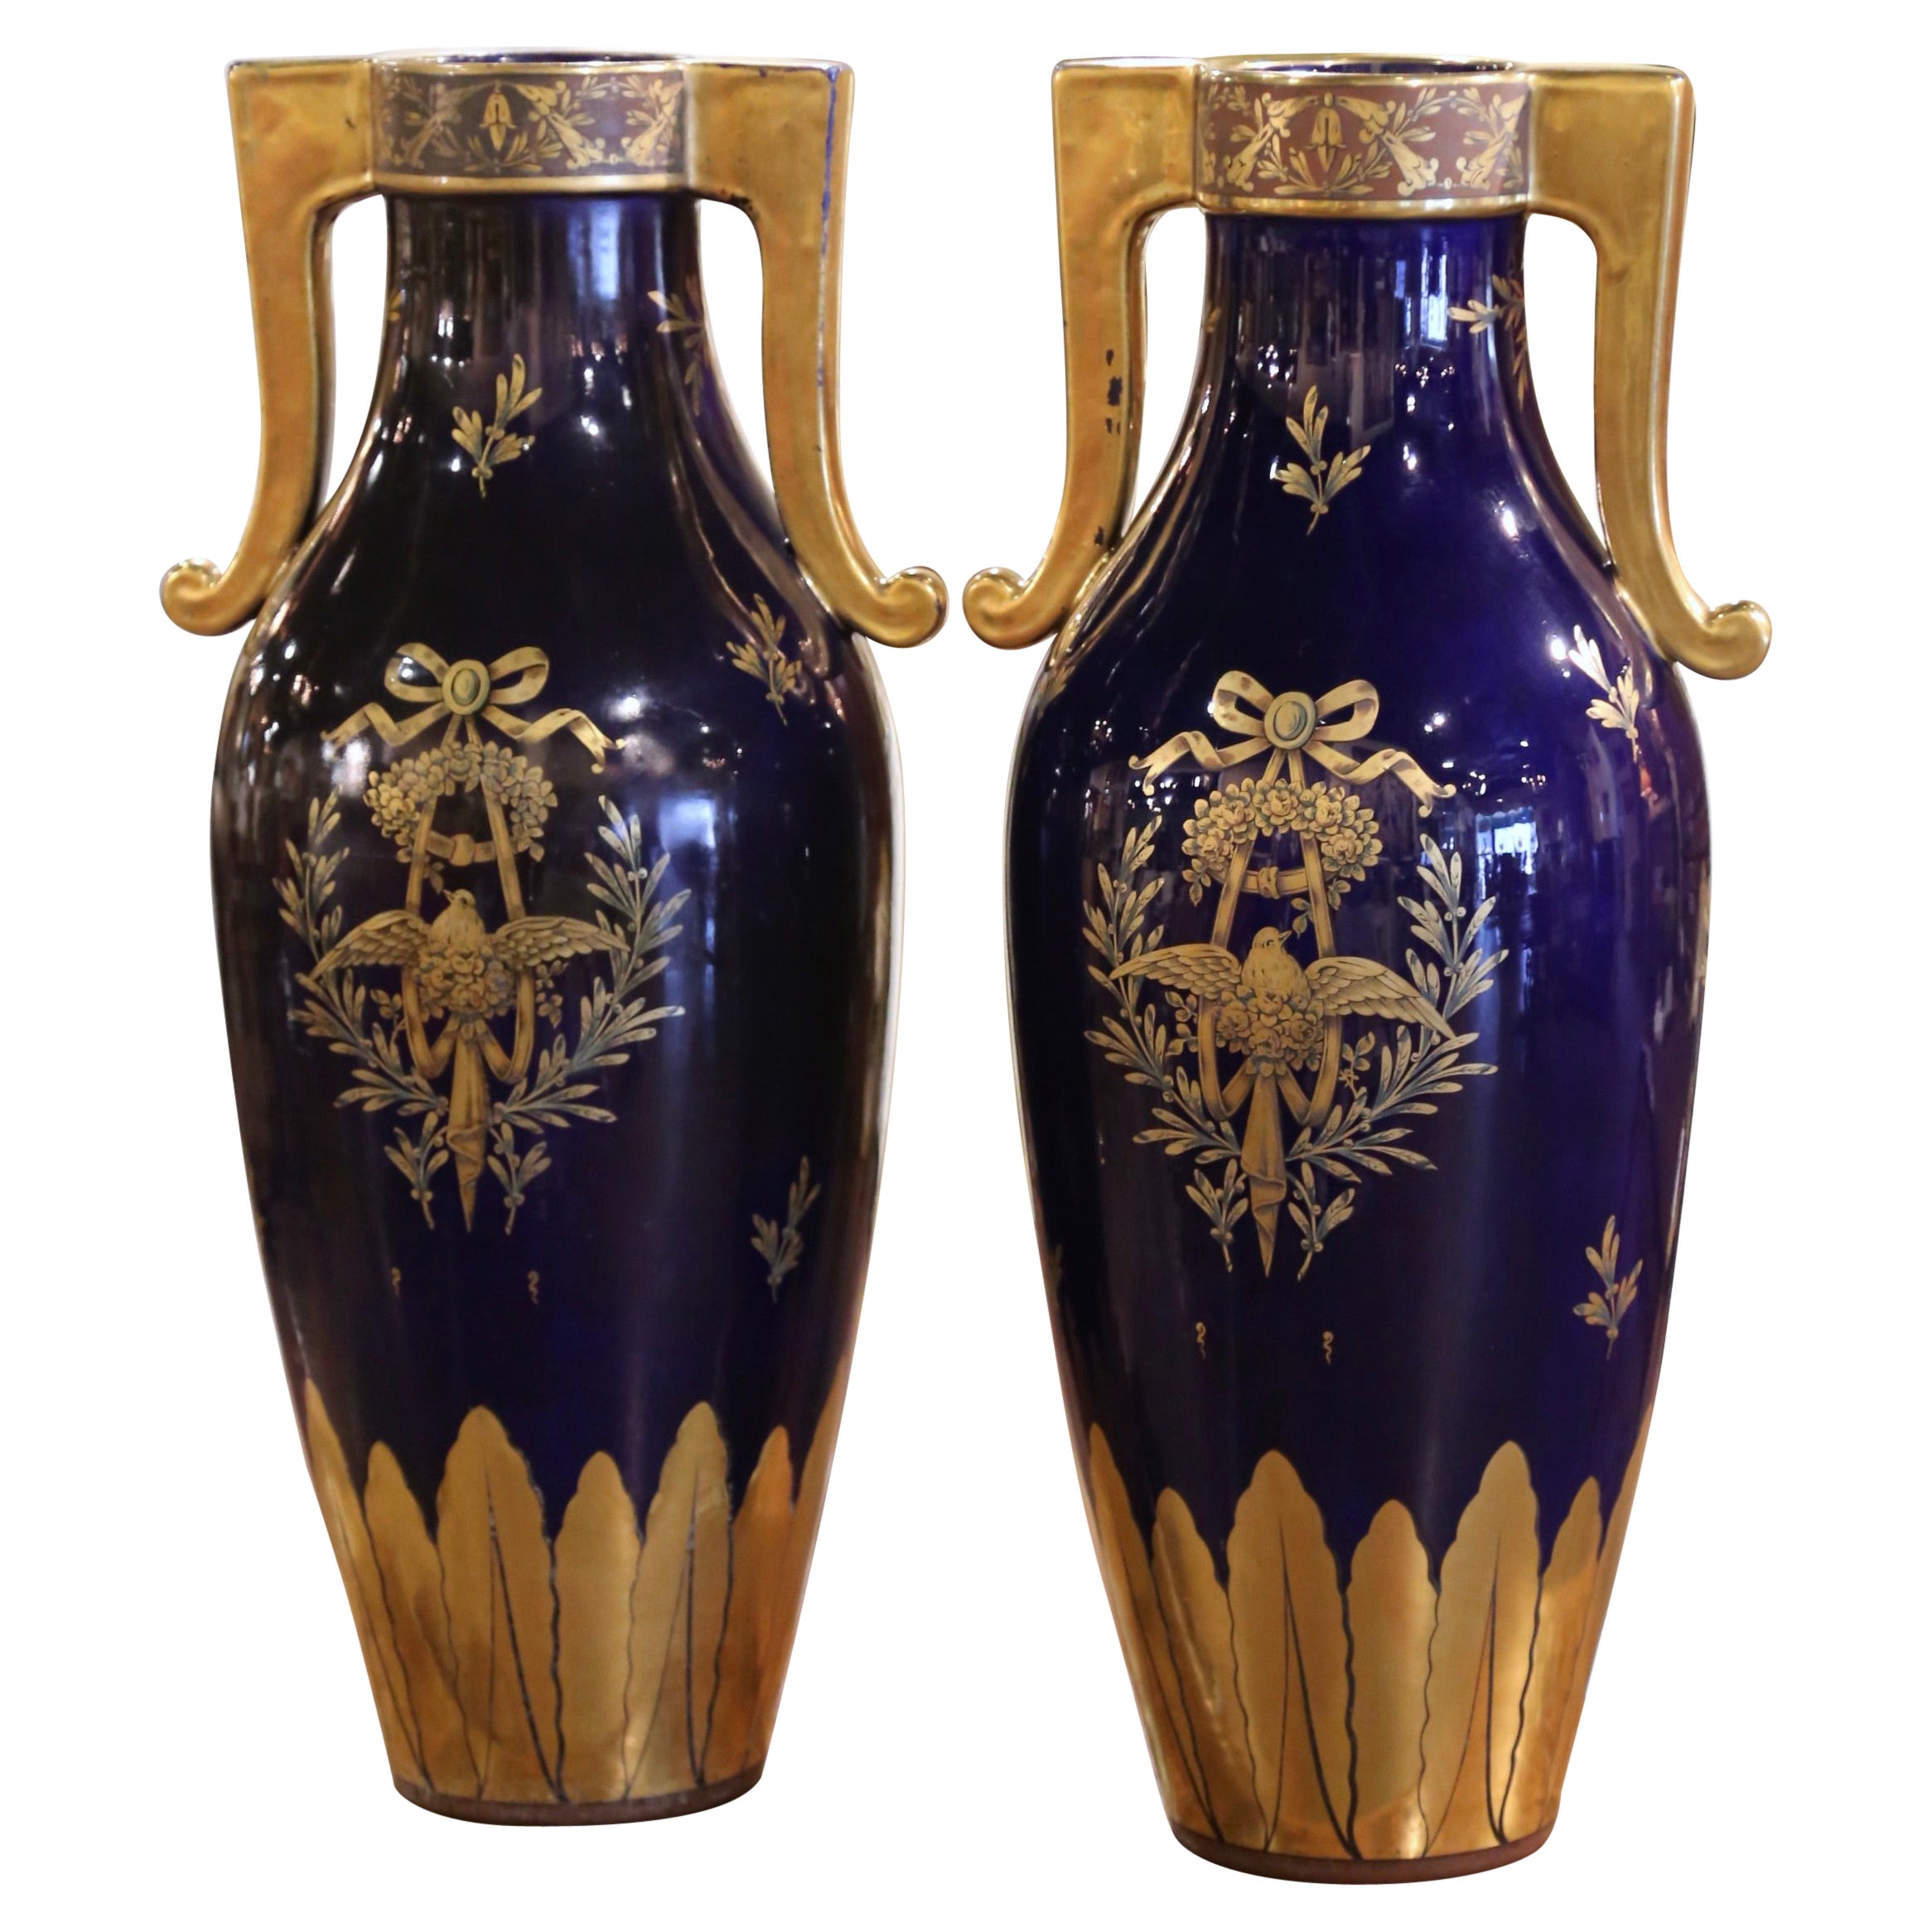 Paire de vases en porcelaine peinte et dorée de style néoclassique français du 19ème siècle